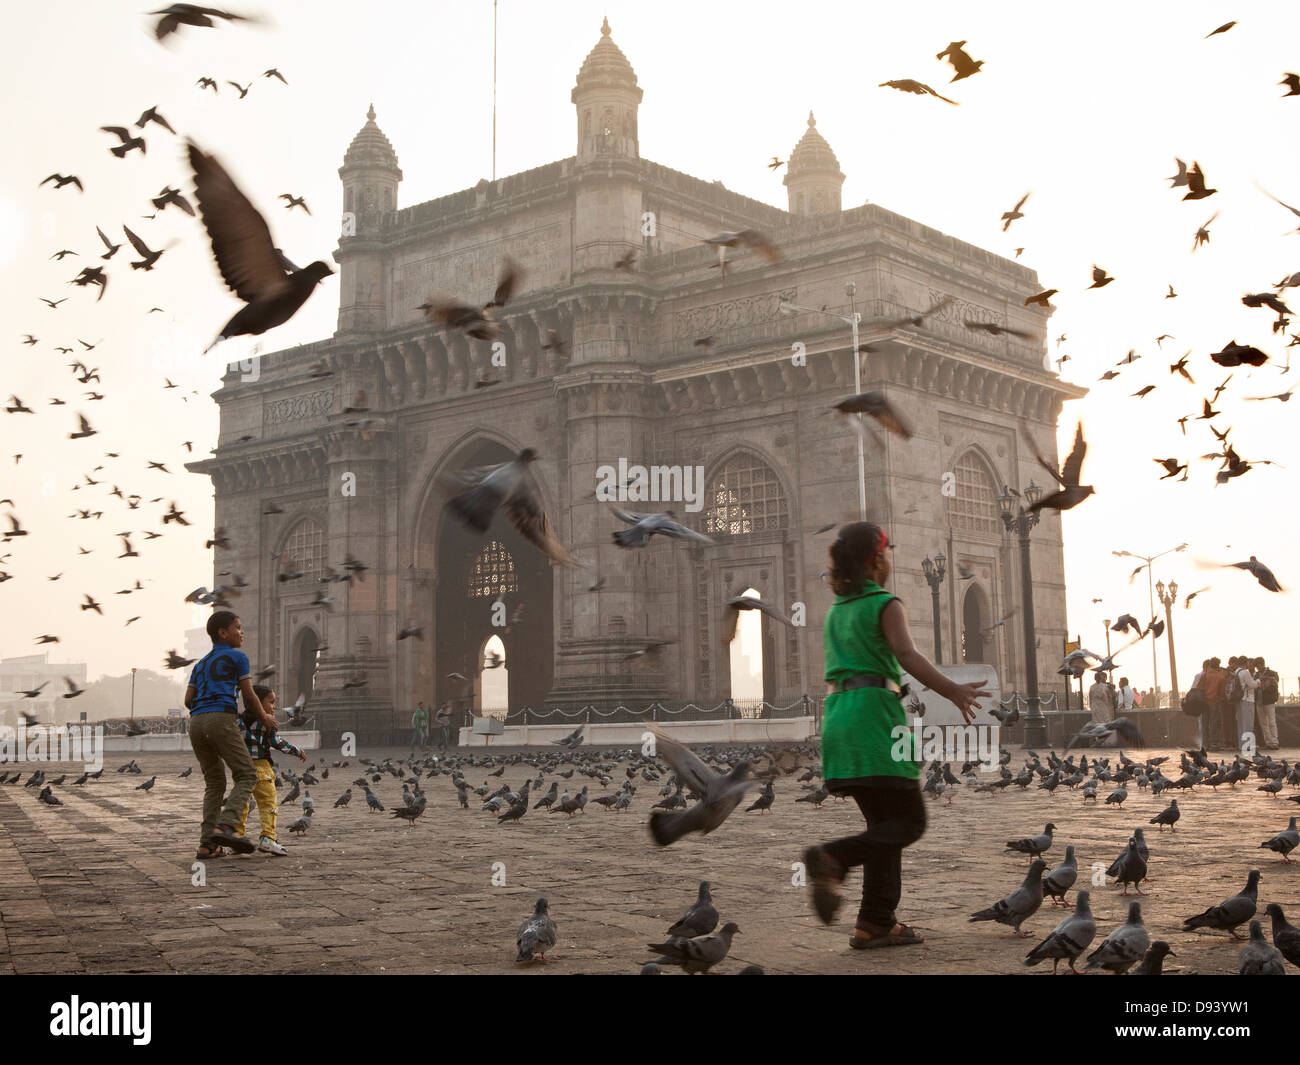 Gateway of India monument at sunrise in Mumbai, India Stock Photo